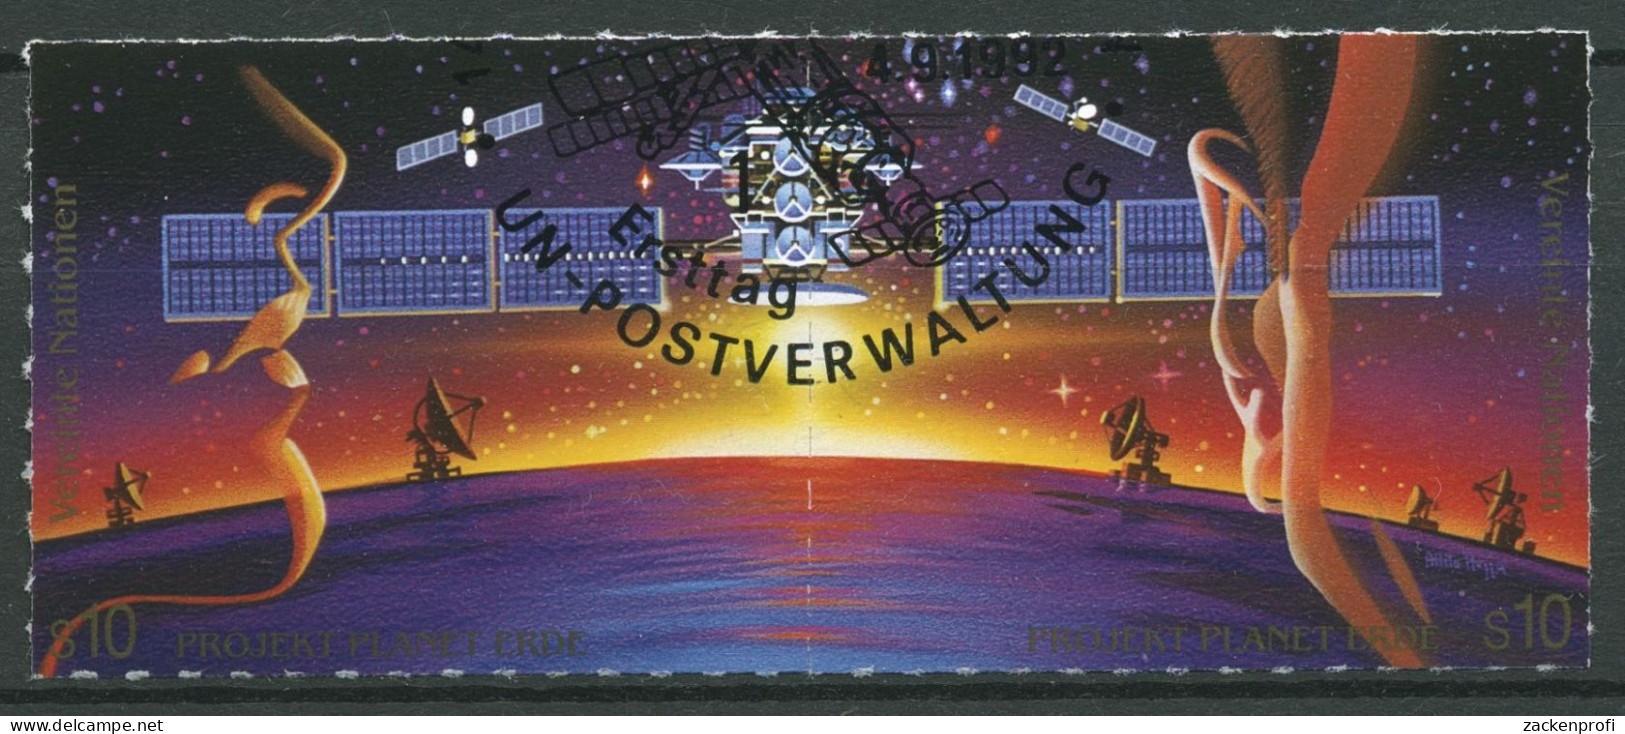 UNO Wien 1992 Weltraumjahr Weltraumforschung 133/34 ZD Gestempelt - Used Stamps